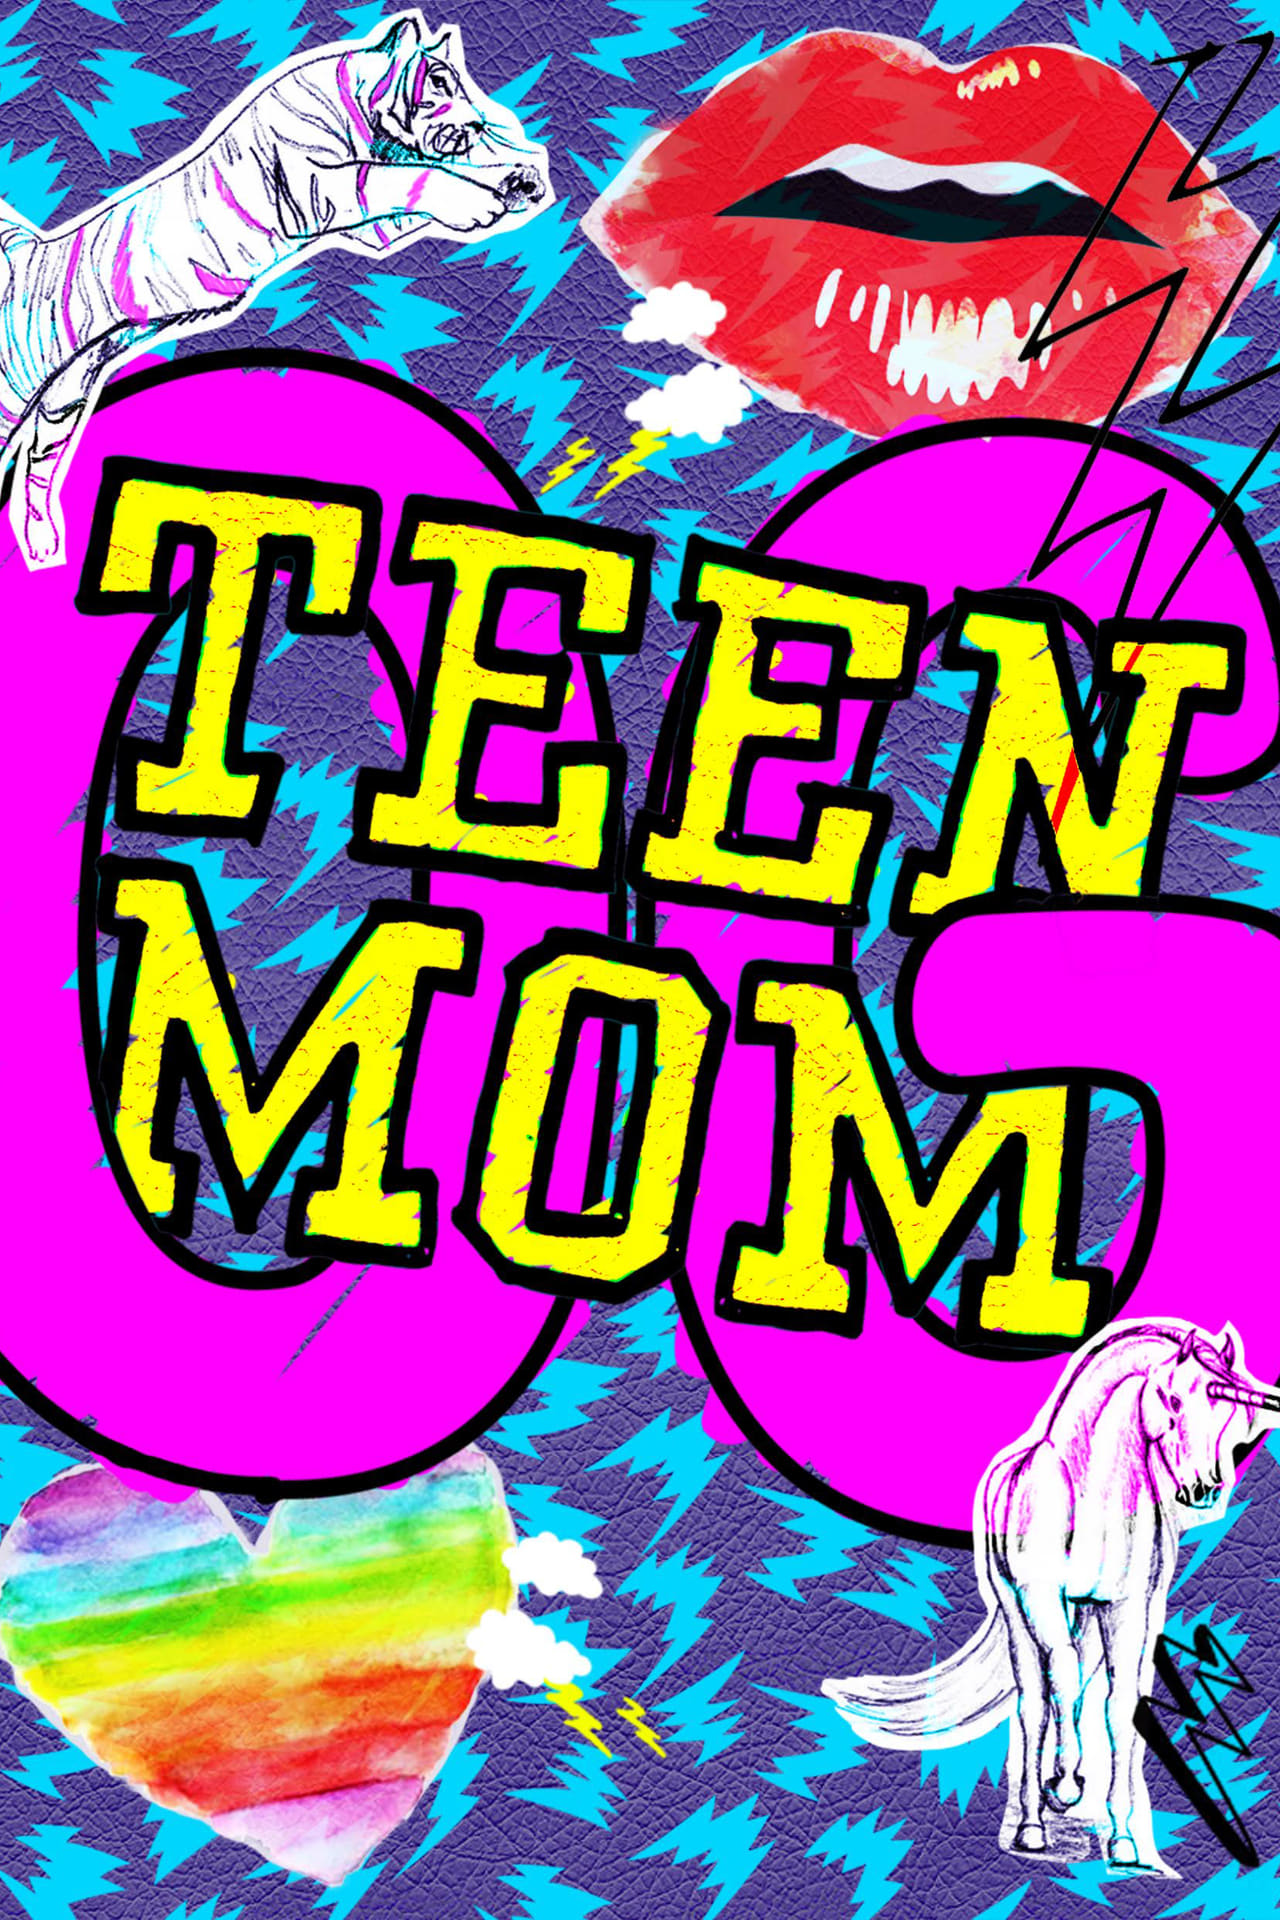 Teen Mom Season 1